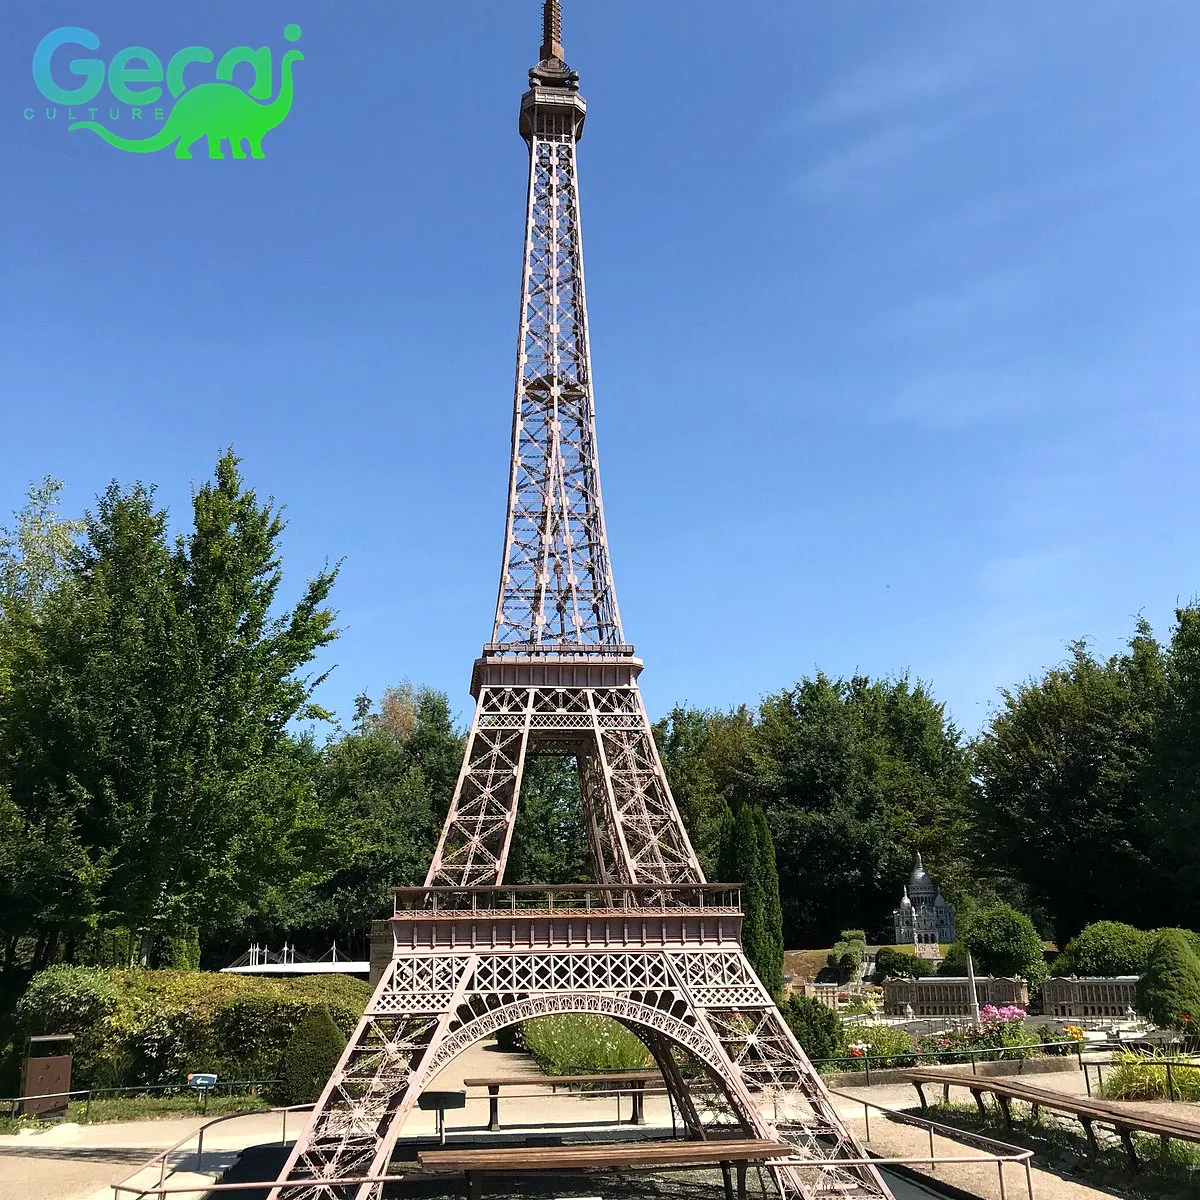 Gecai thu nhỏ cảnh quan công viên điêu khắc Mô hình tháp Eiffel